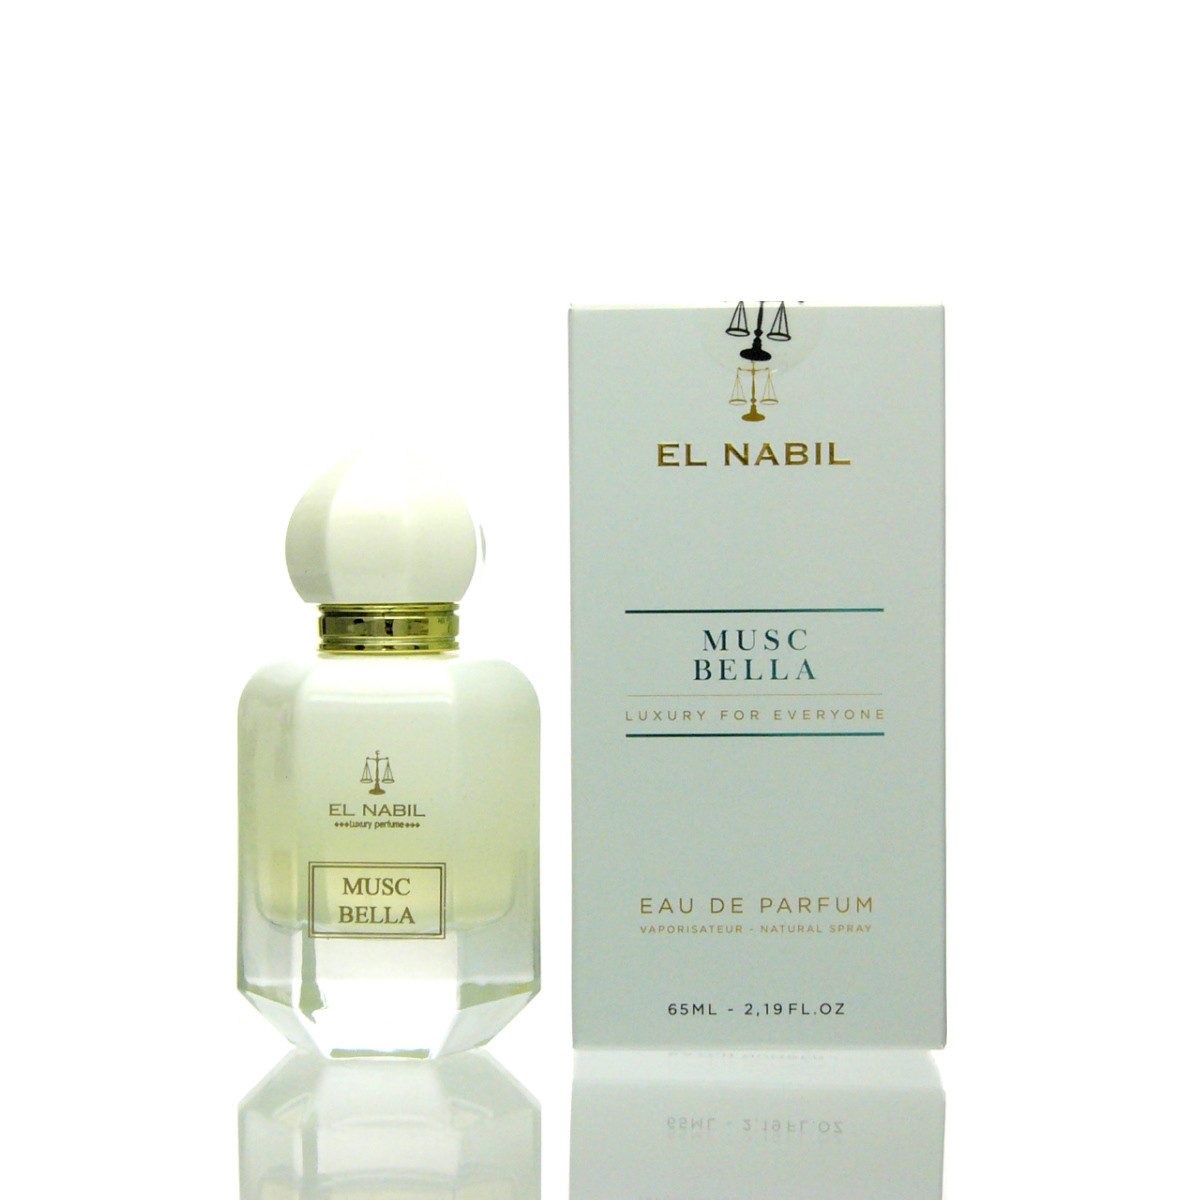 El Nabil Eau de Parfum El Nabil Musc Bella Eau de Parfum 65 ml